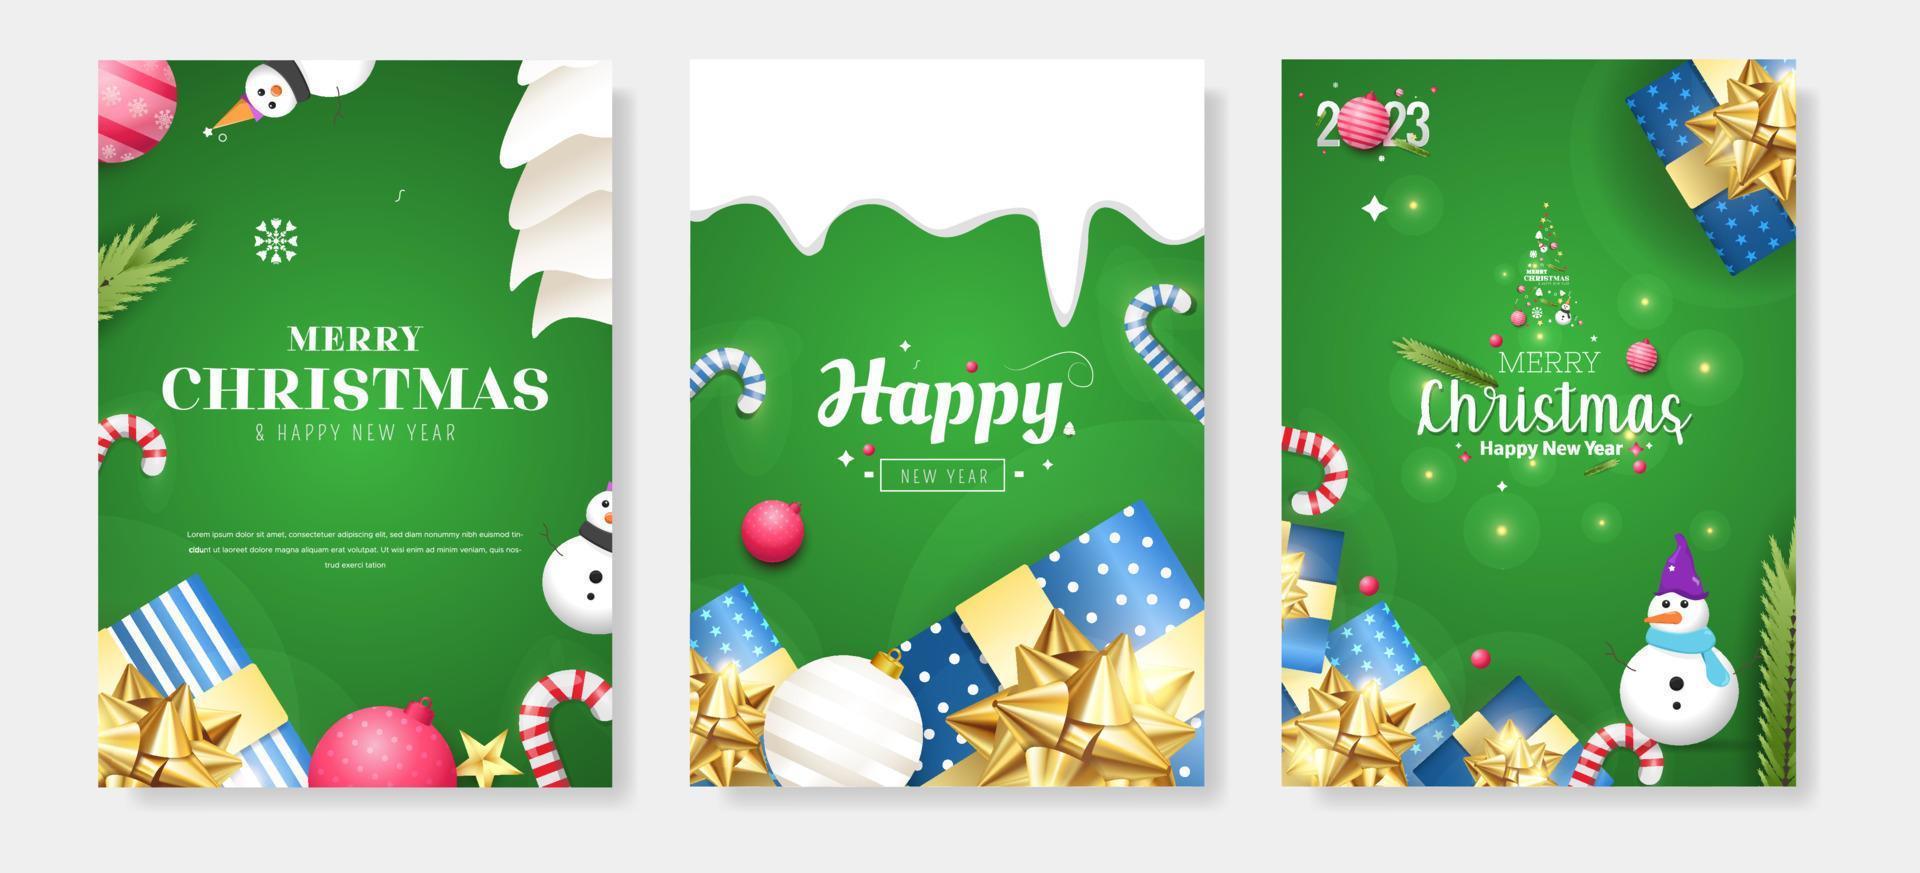 modelo de fundo de banner de cartaz de cartões de saudação de feliz natal vetor